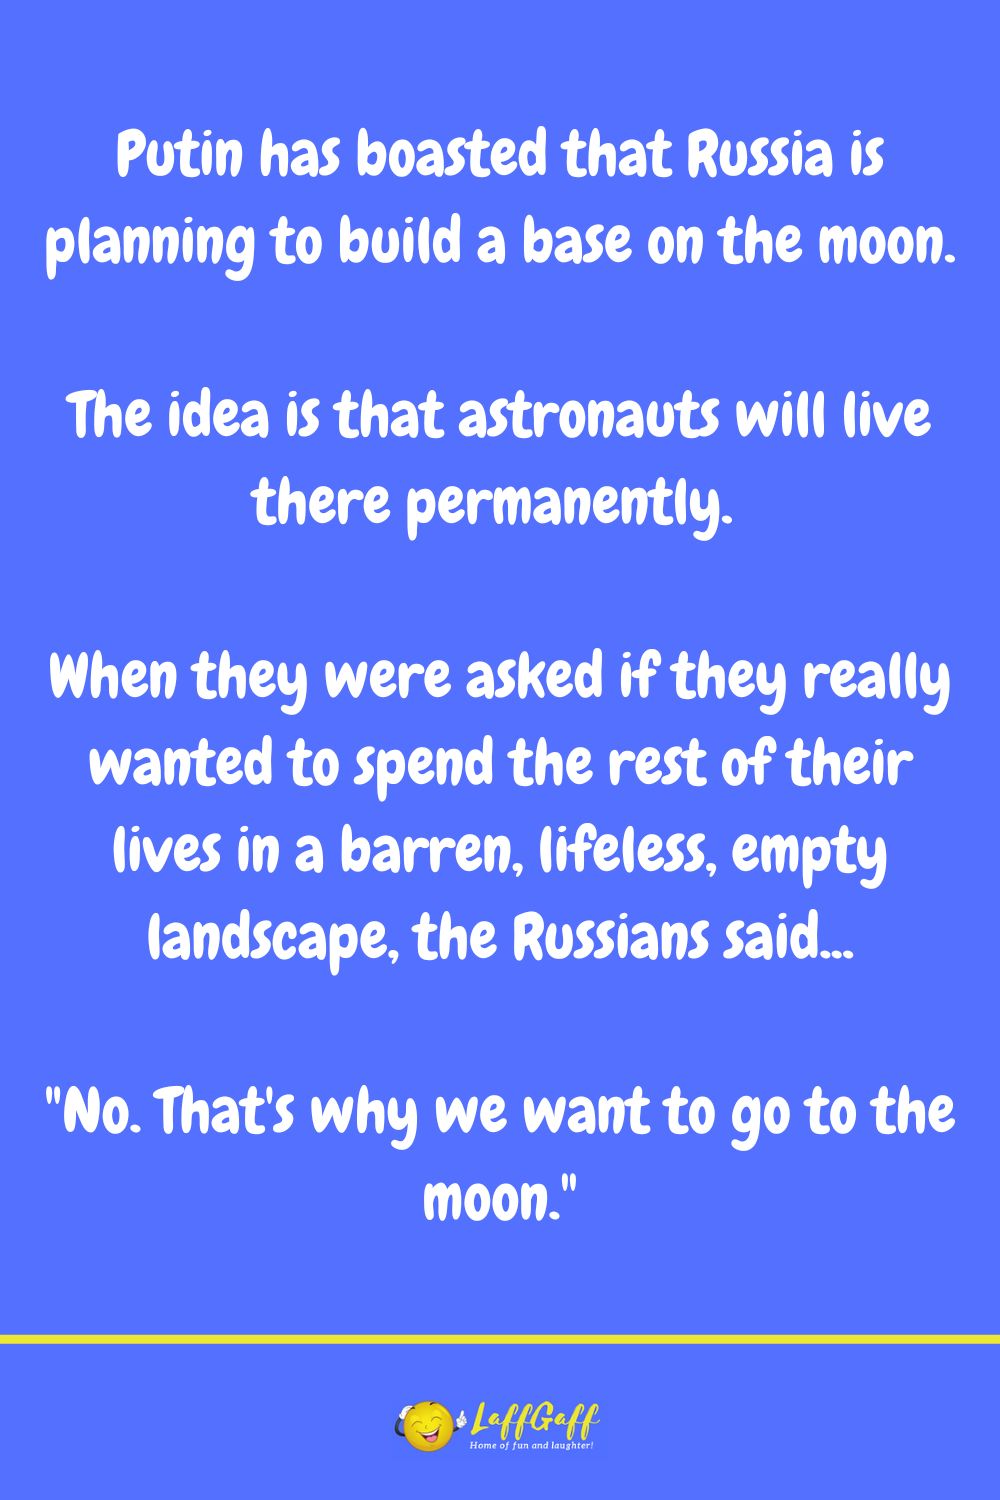 Moon base joke from LaffGaff.